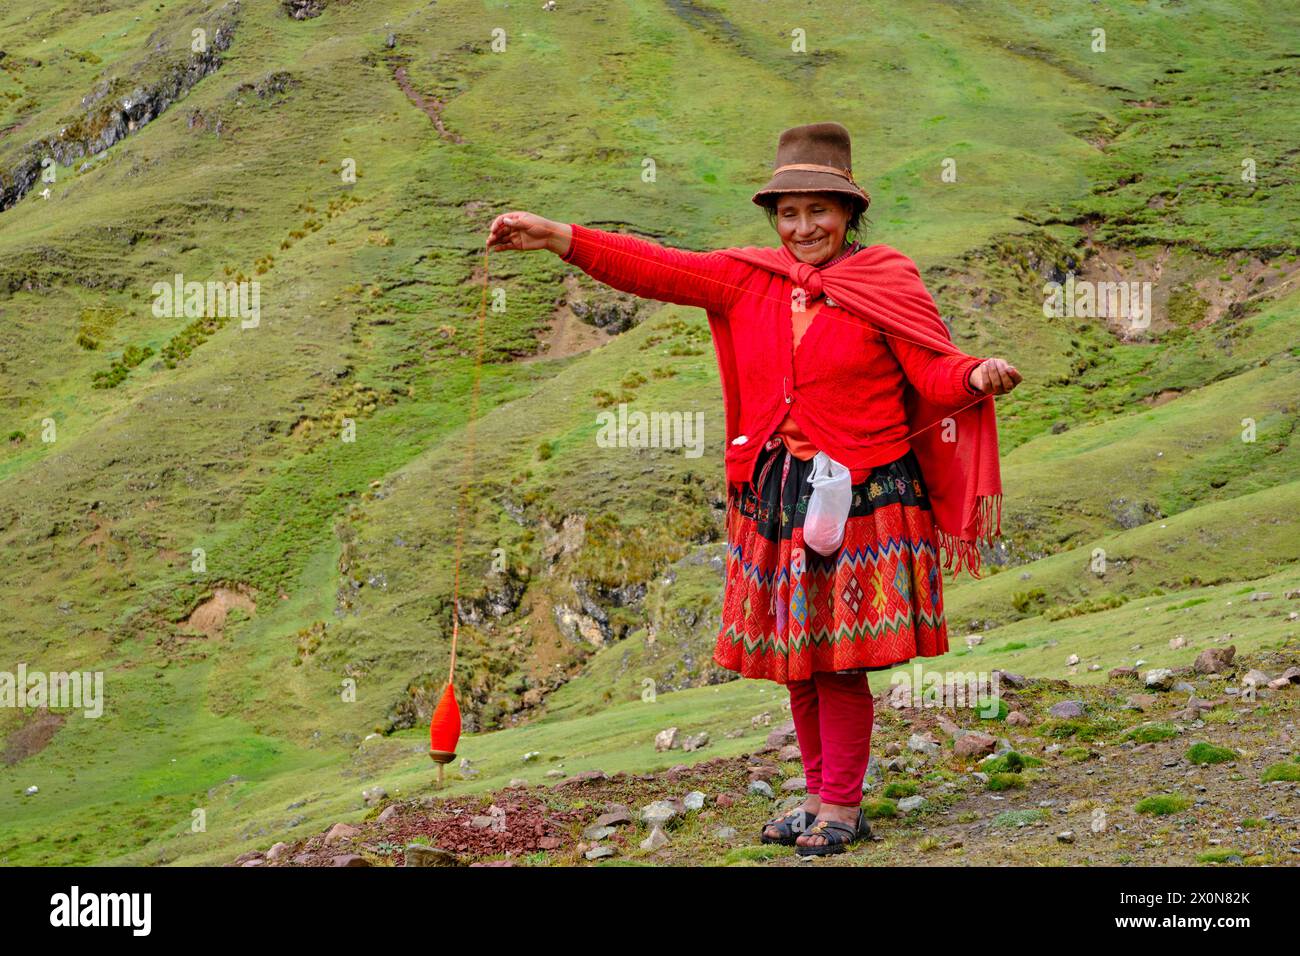 Peru, Provinz Cuzco, das Heilige Tal der Inkas, Andengemeinden, Quechua-Frau, die Wolle spinnt Stockfoto